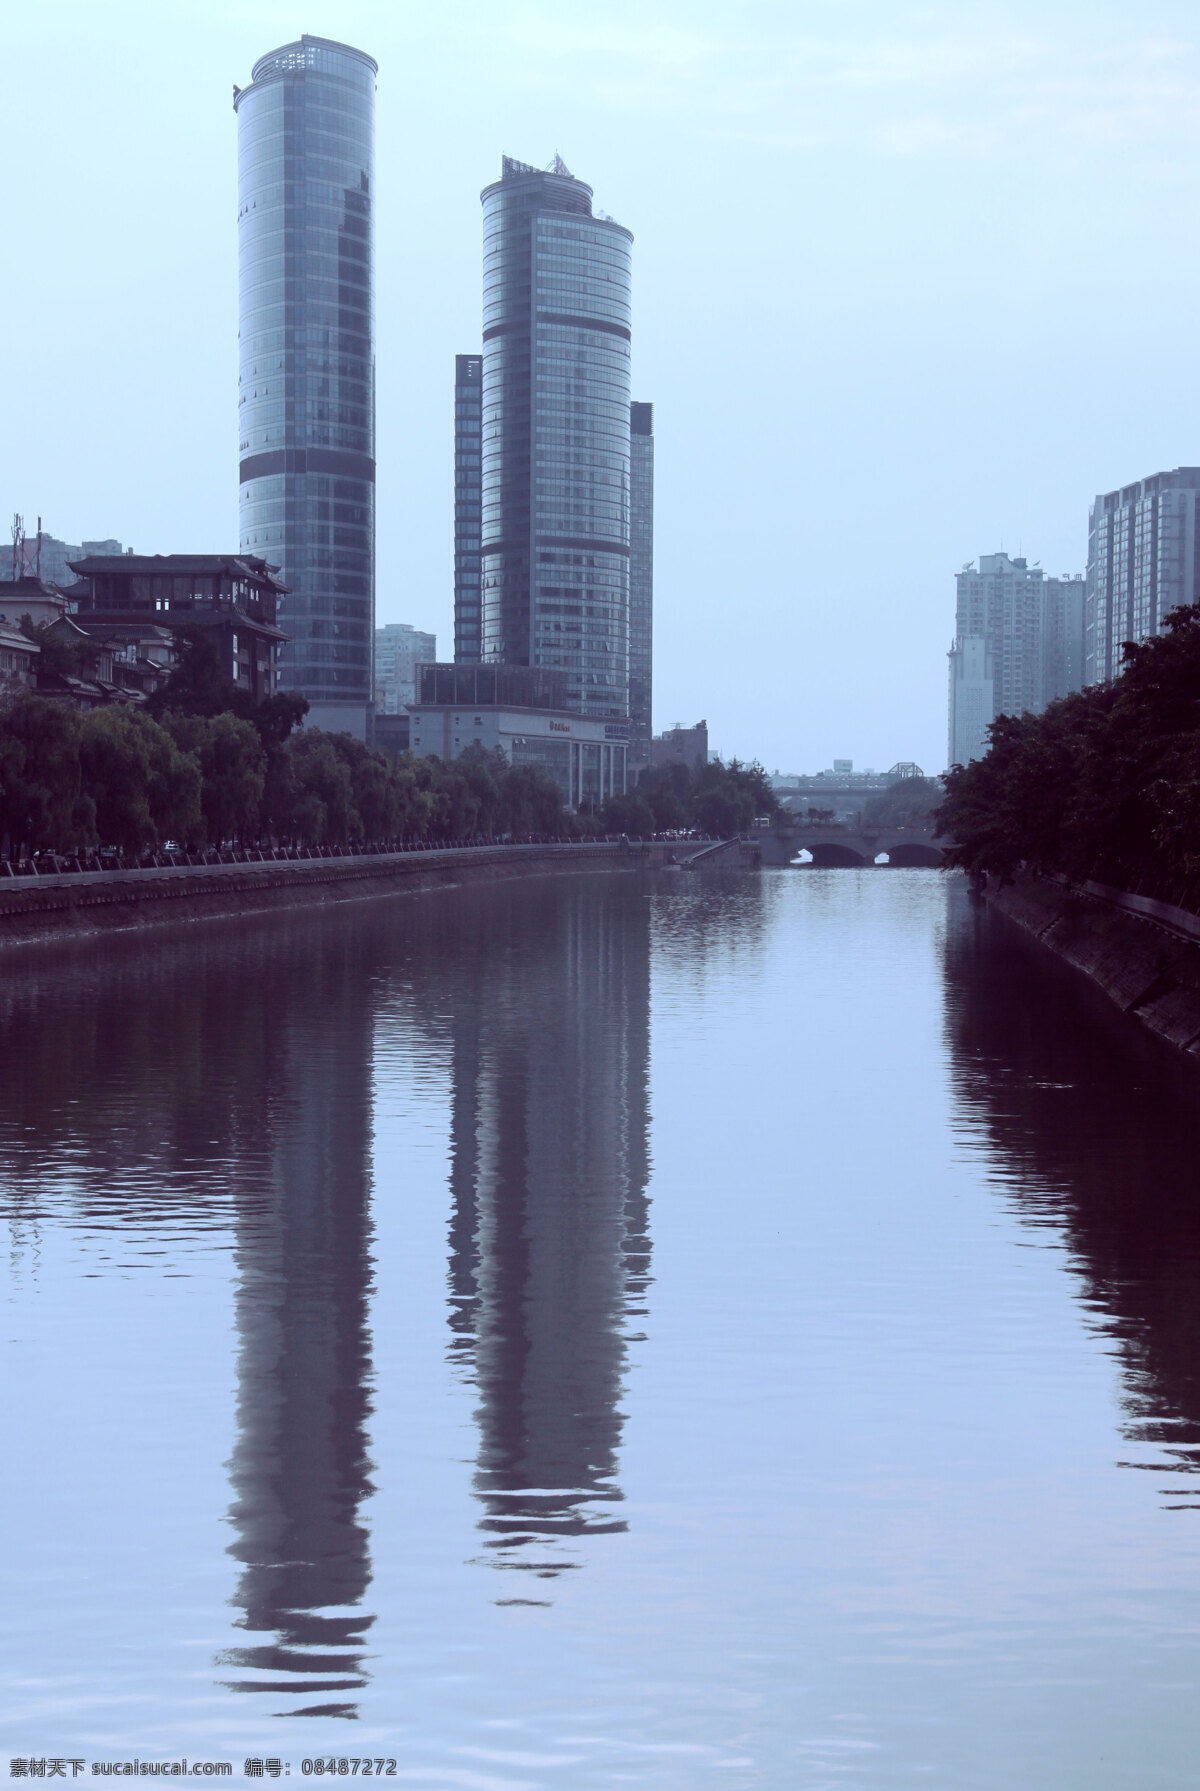 成都护城河 河水 高楼 大厦 楼房 成都 建筑景观 自然景观